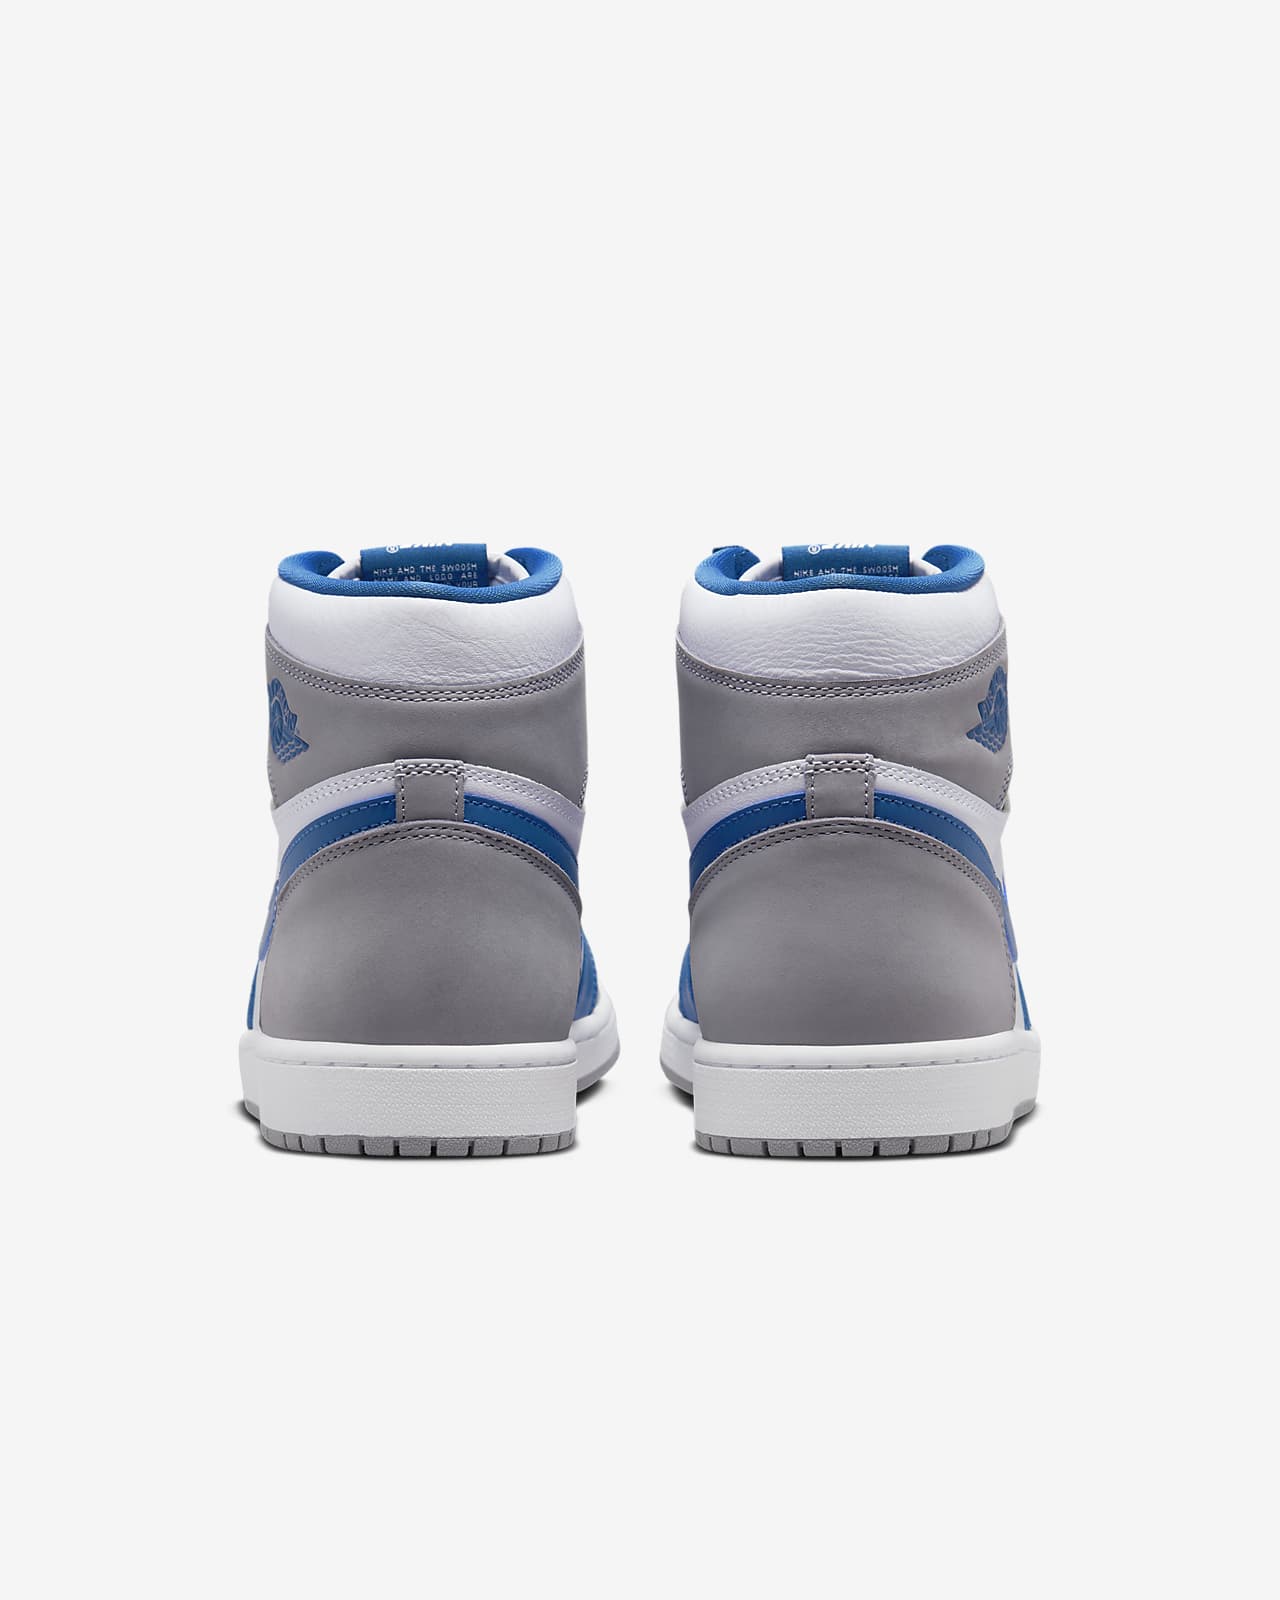 Air Jordan 1 Retro High OG Mens Shoes Nike IN